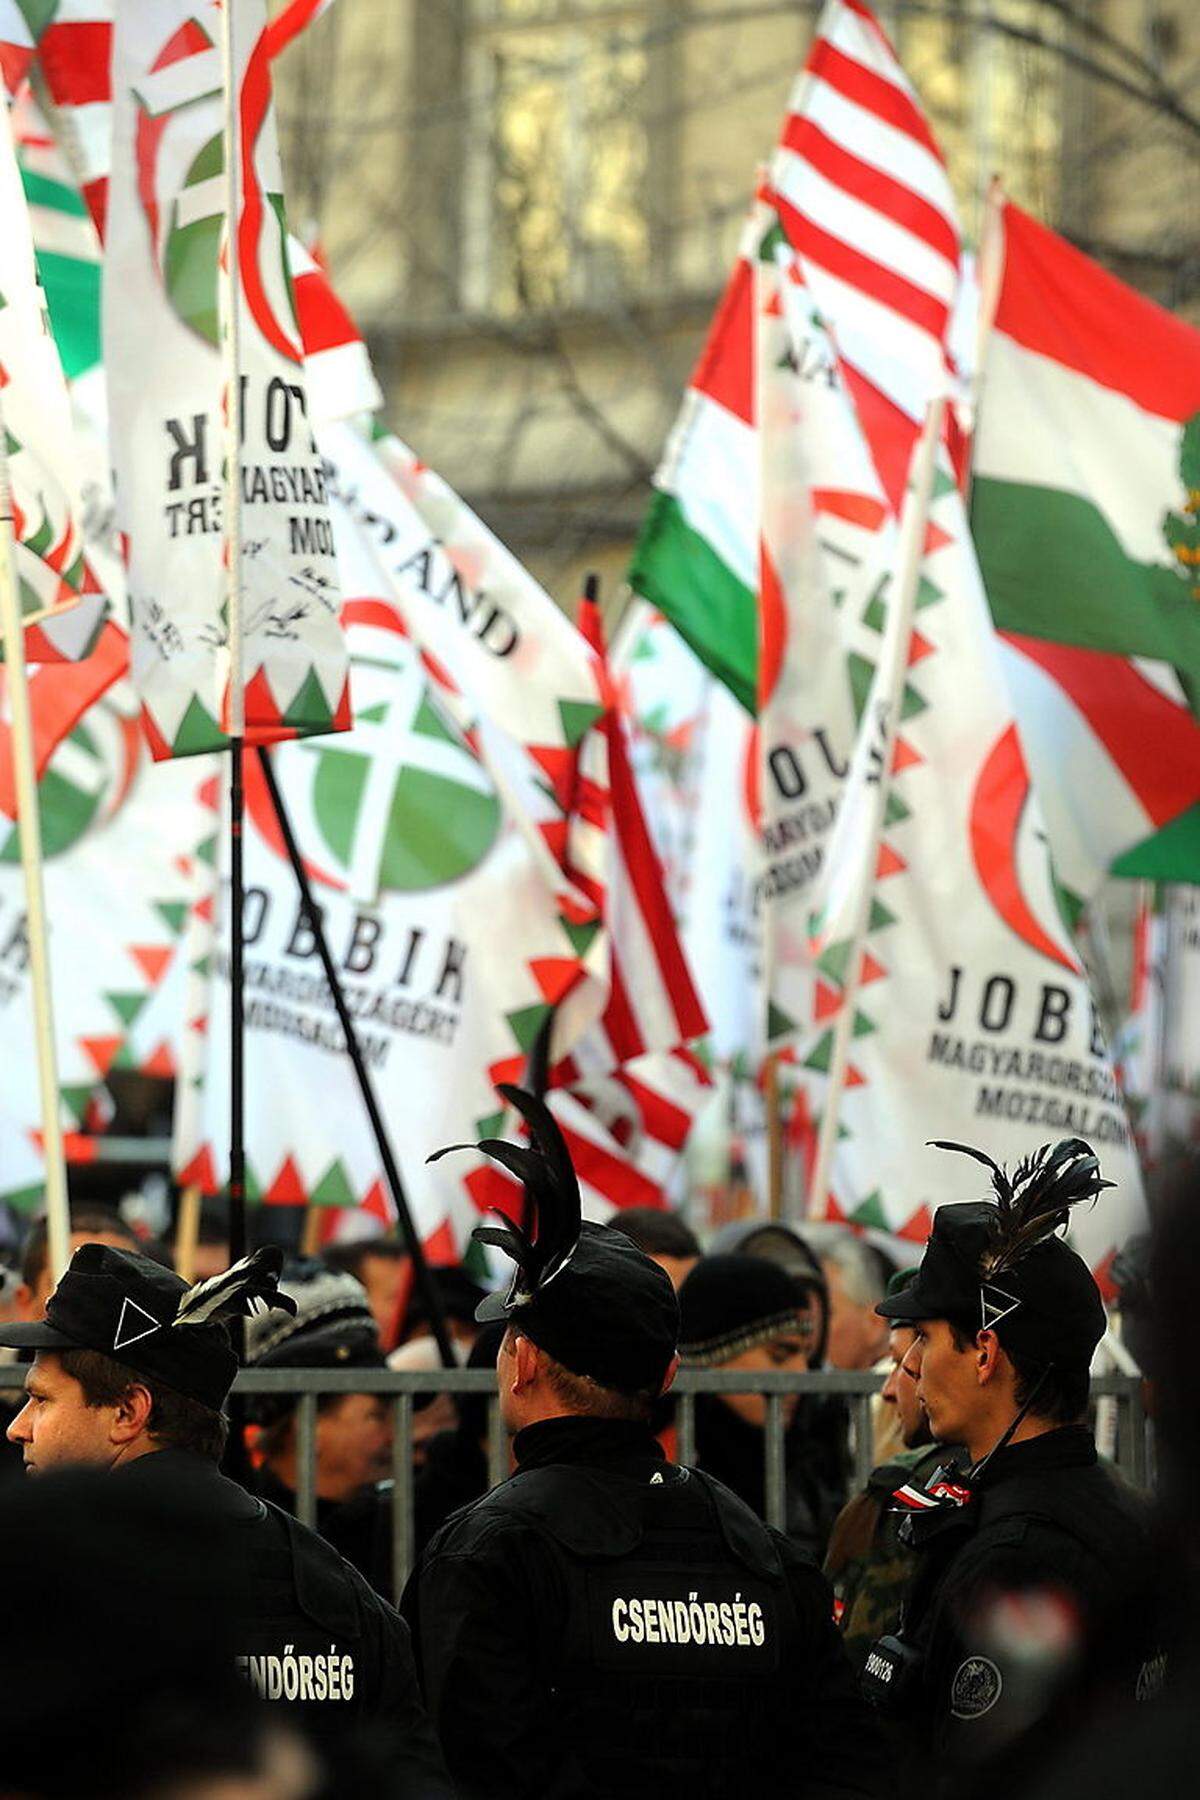 Der Aufstieg der rechtsextremen ungarischen Partei Jobbik ("Bewegung für ein besseres Ungarn") wird seit ihrer Gründung im Jahr 2003 in Westeuropa mit Besorgnis beobachtet. Jobbik, deren Parteikader immer wieder offen antisemitisch oder romafeindlich auftreten, kam bei der Parlamentswahl 2014 auf 20,3 Prozent, ein deutlicher Zugewinn zu der Wahl 2010 (rund 15 Prozent).